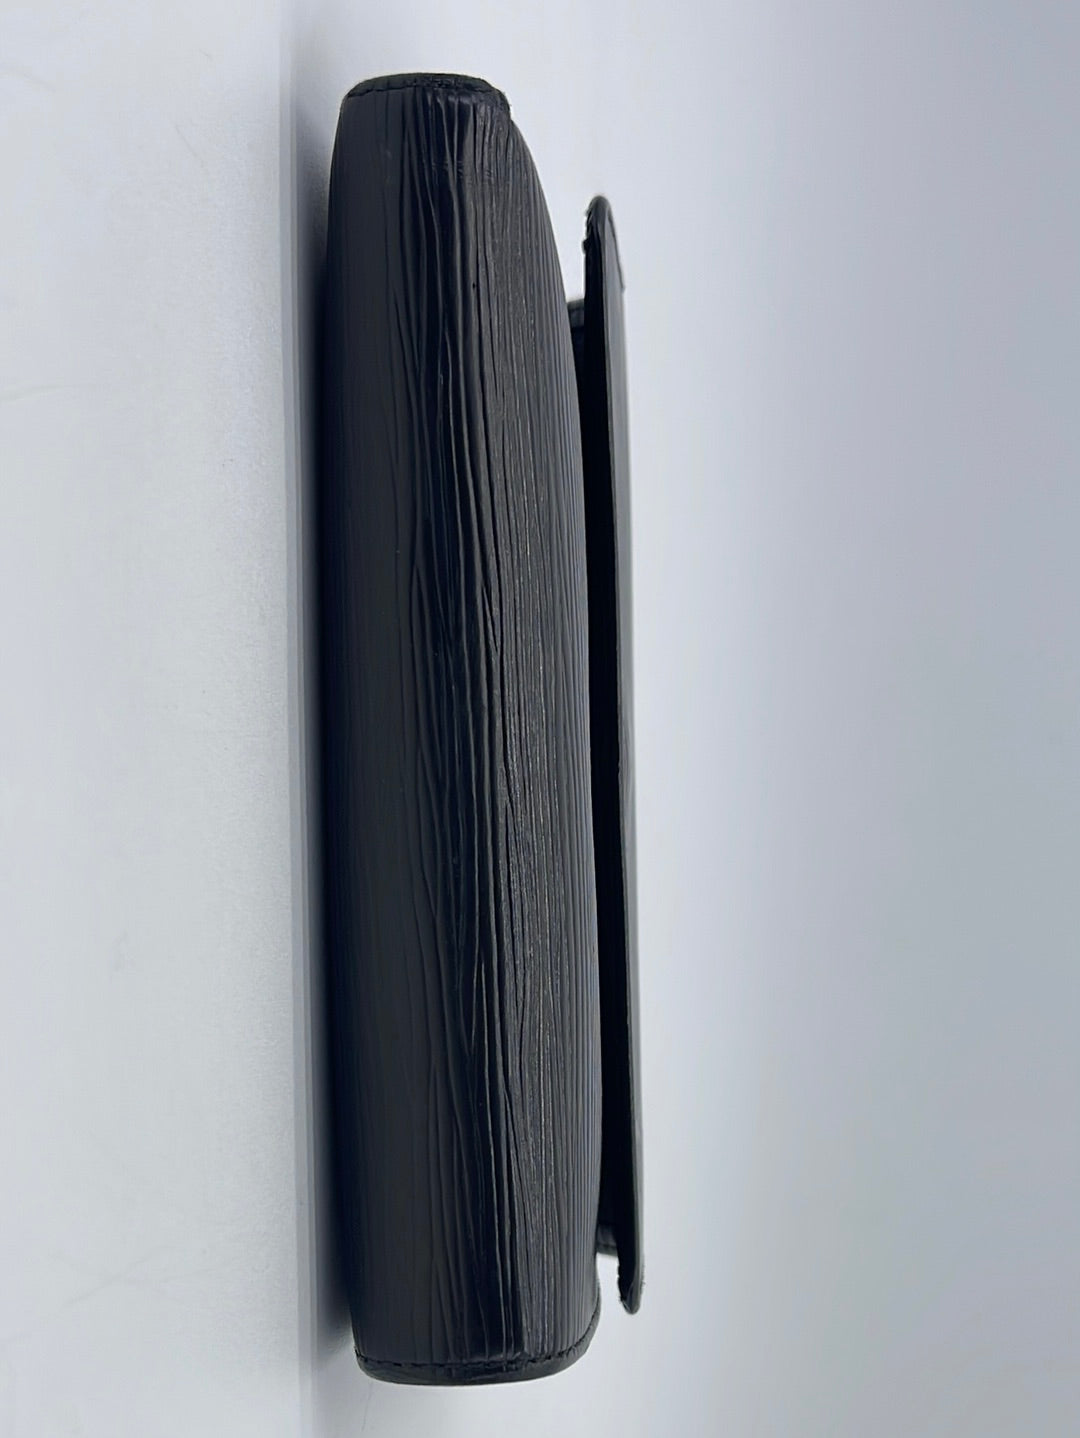 Louis Vuitton Portefeuille Comète Black Leather Wallet (Pre-Owned)